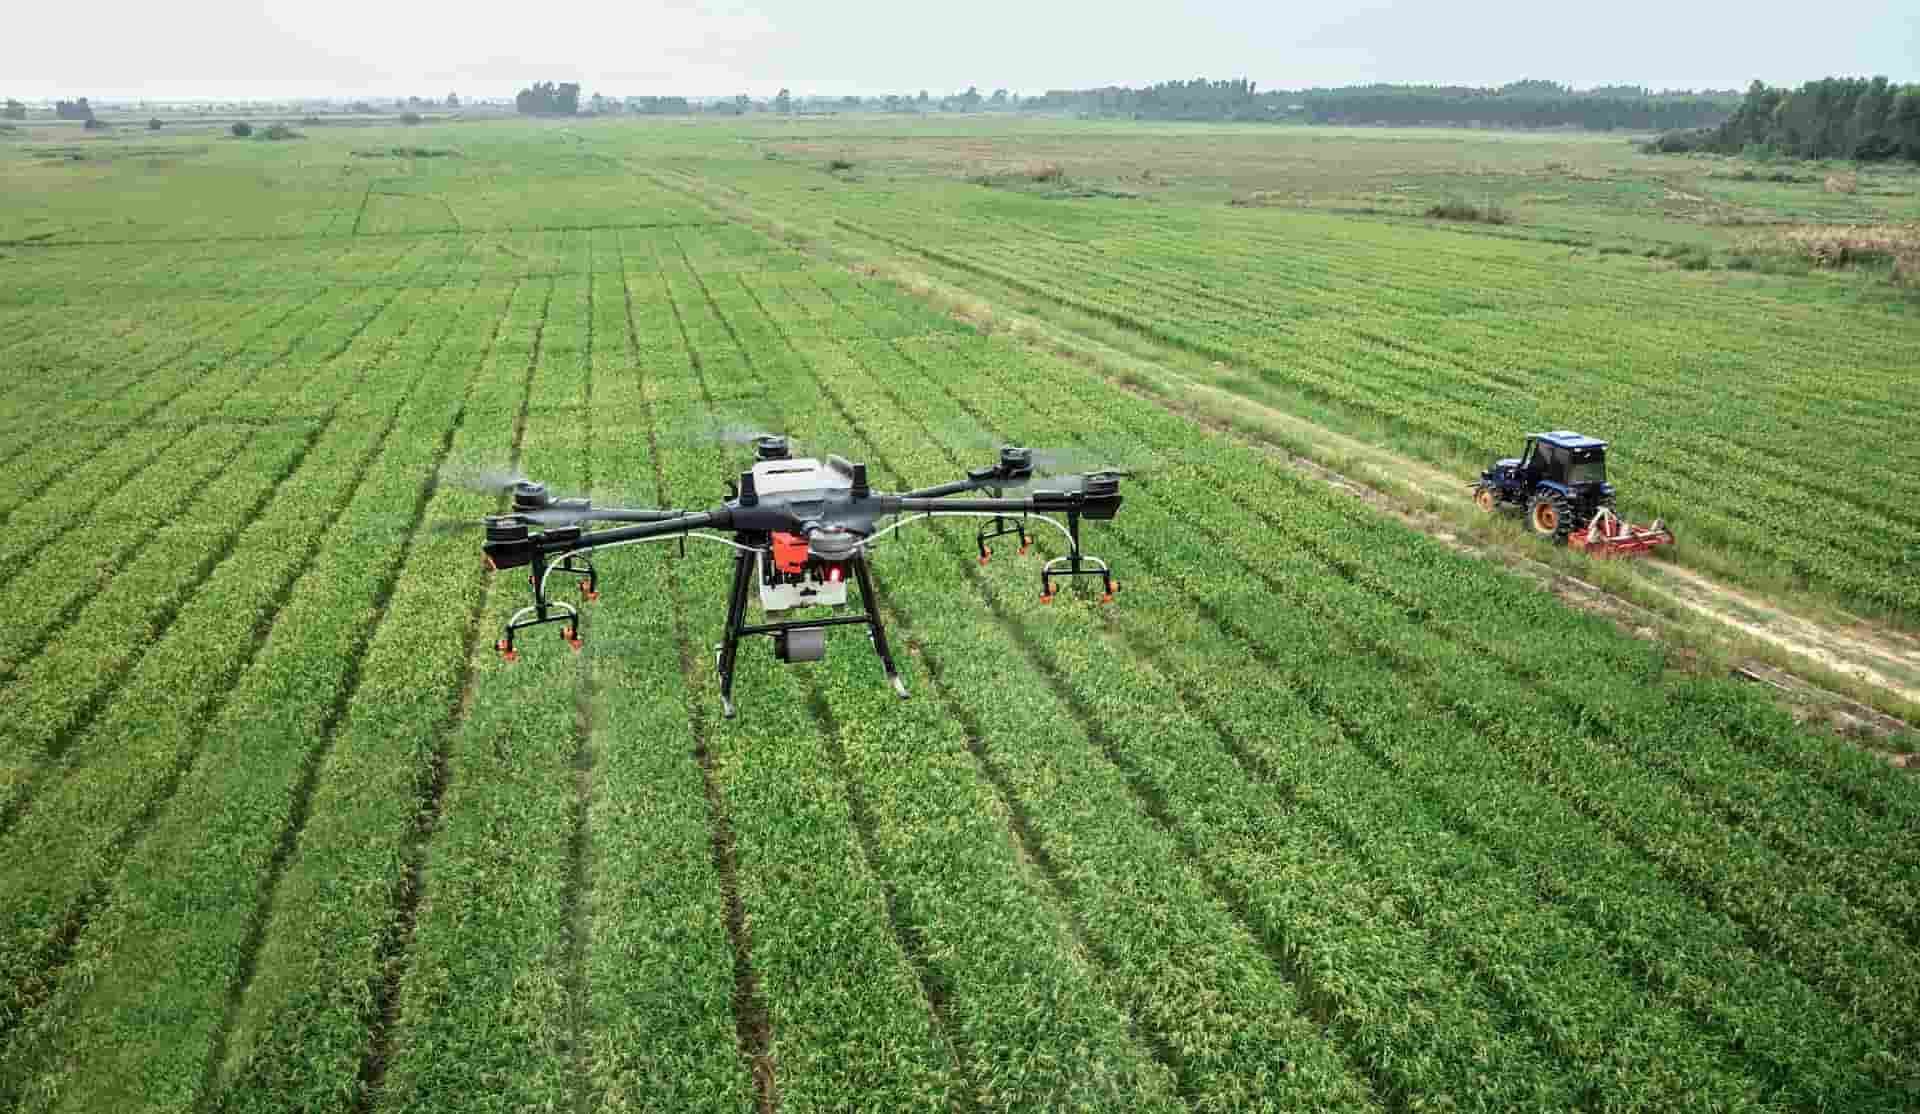 Drones σε αγροτική παραγωγή